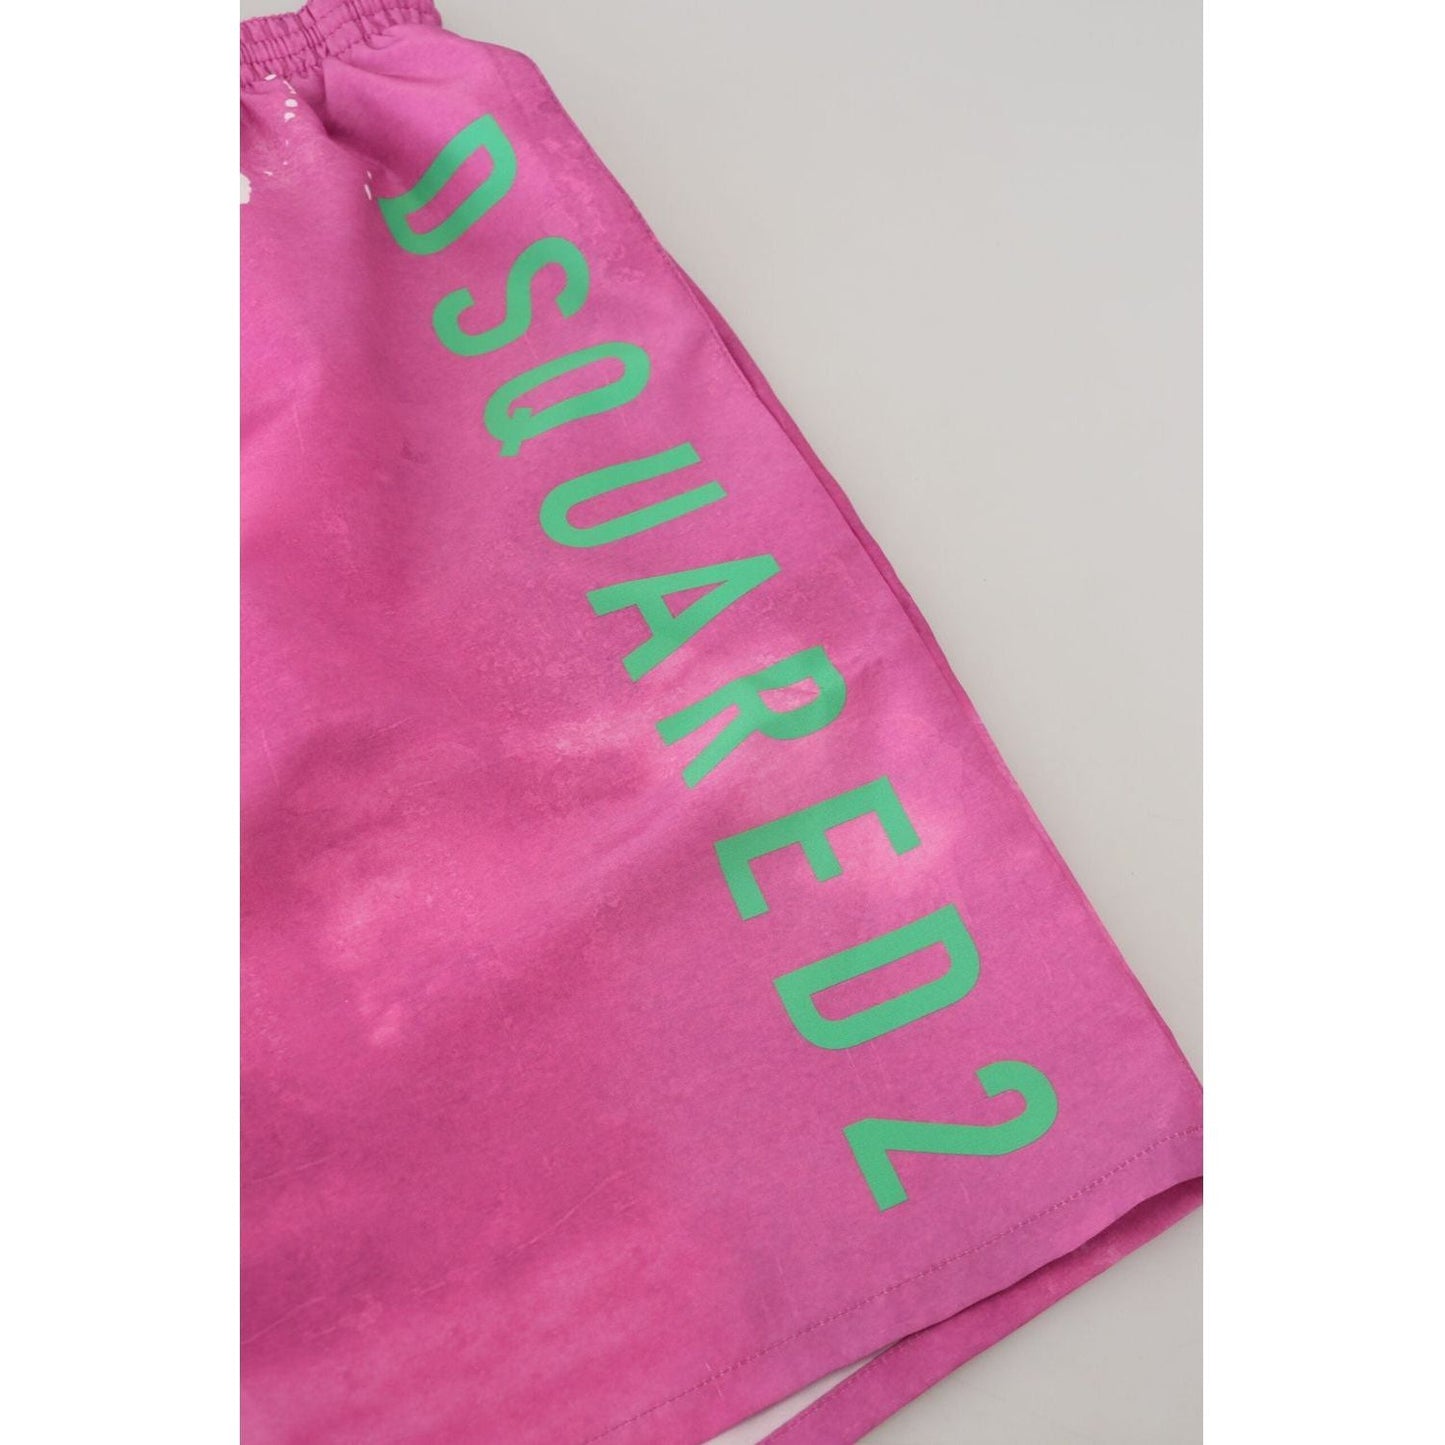 Dsquared² Pink Tie Dye Swim Shorts Boxer pink-tie-dye-logo-men-beachwear-shorts-swimwear IMG_6215-scaled-6e76147e-cec.jpg